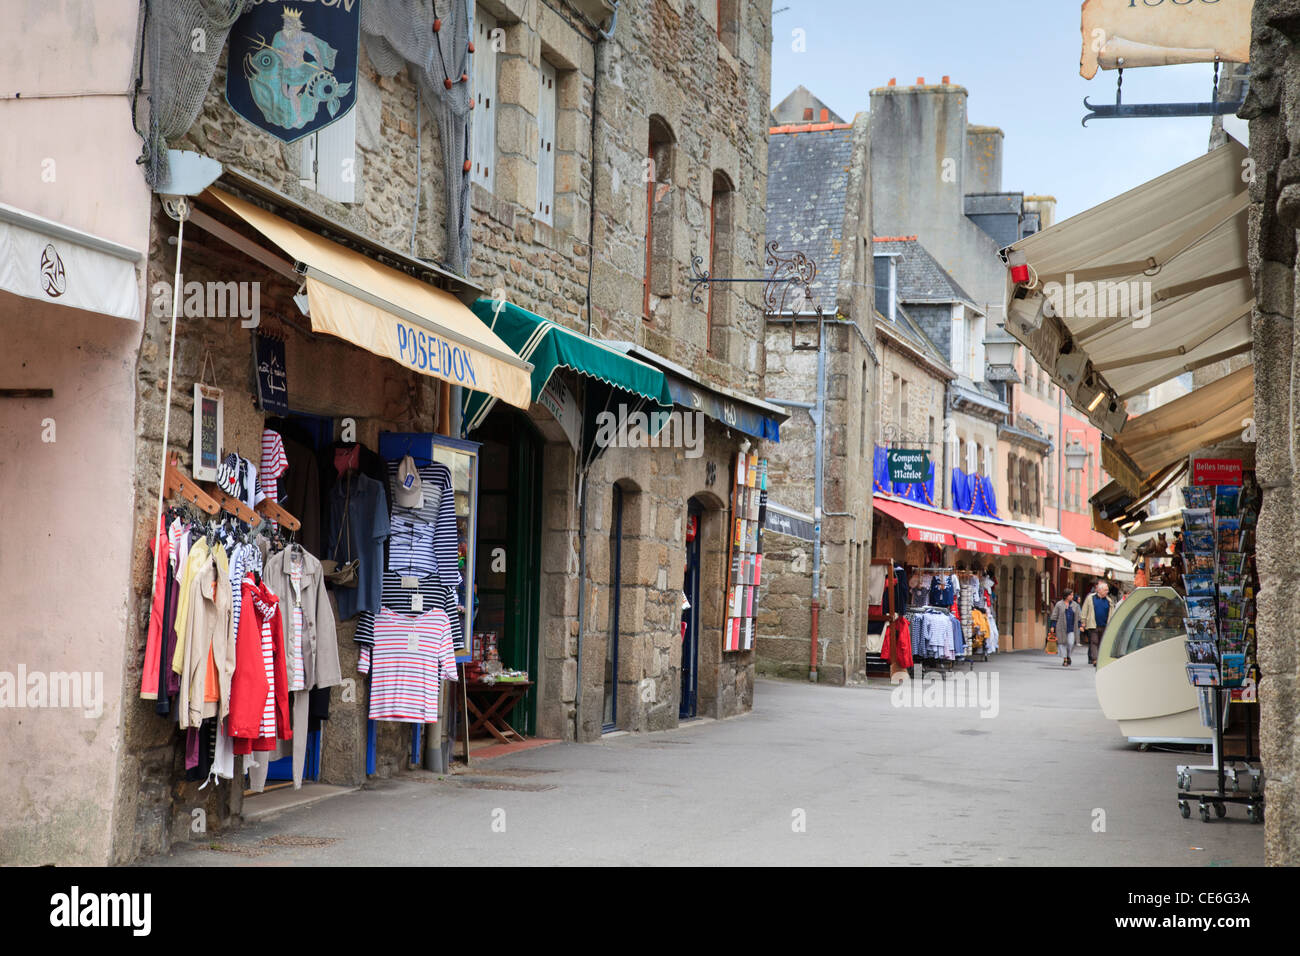 Boutiques de souvenirs vendant des vêtements à rayures Breton dans la ville close à Concarneau, Bretagne, France. Banque D'Images